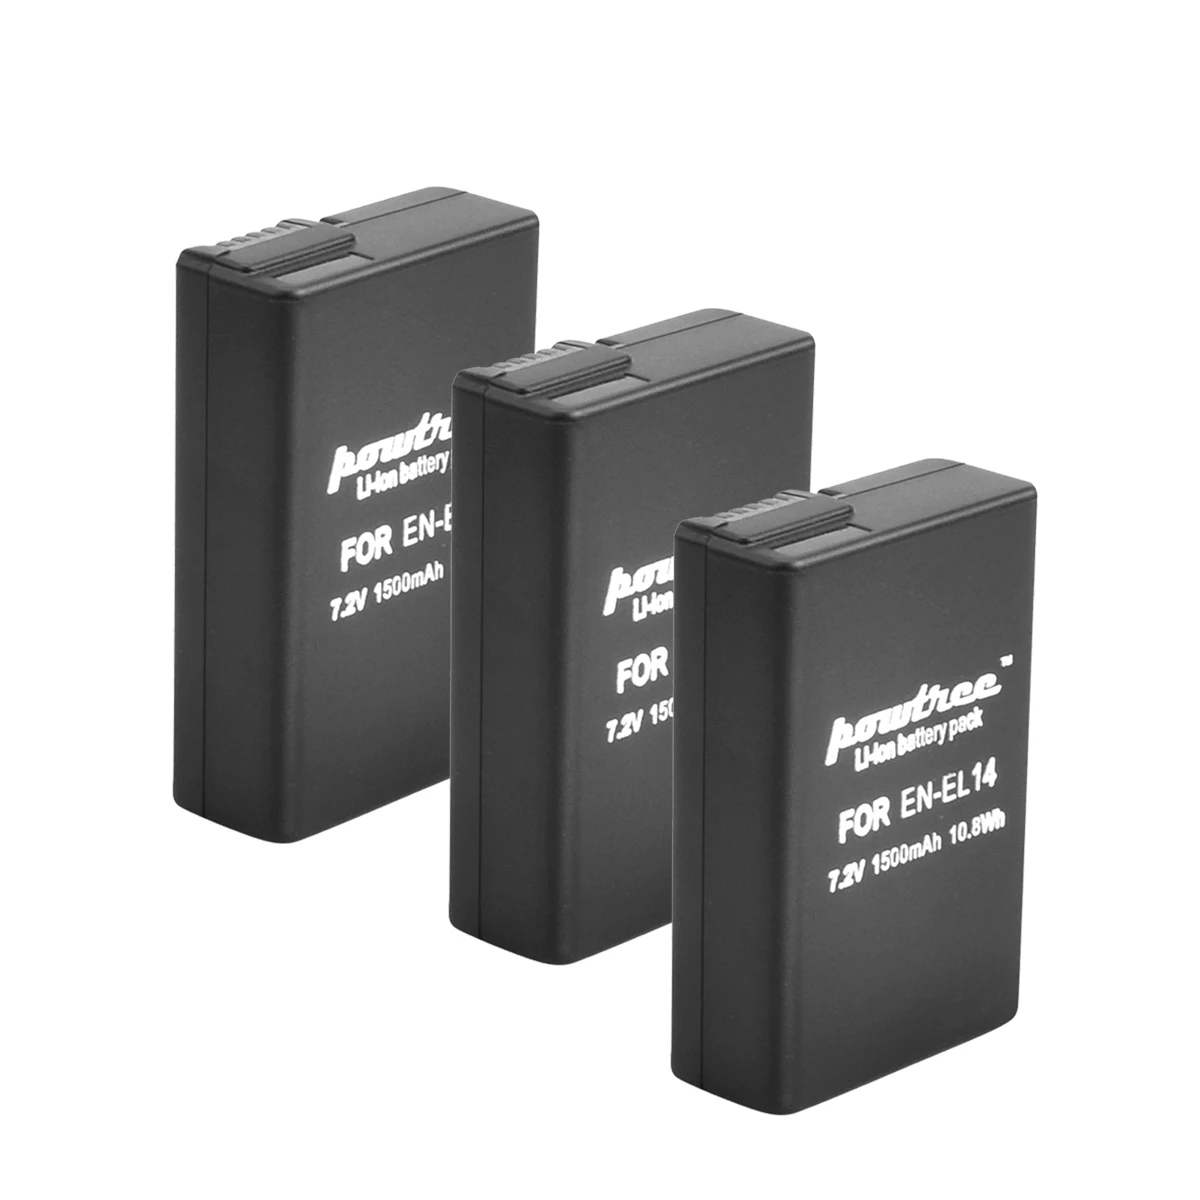 BATOOL-batería recargable EN-EL14 EN EL14 para cámara, Cargador USB LED para Nikon D3100 D3200 D3300